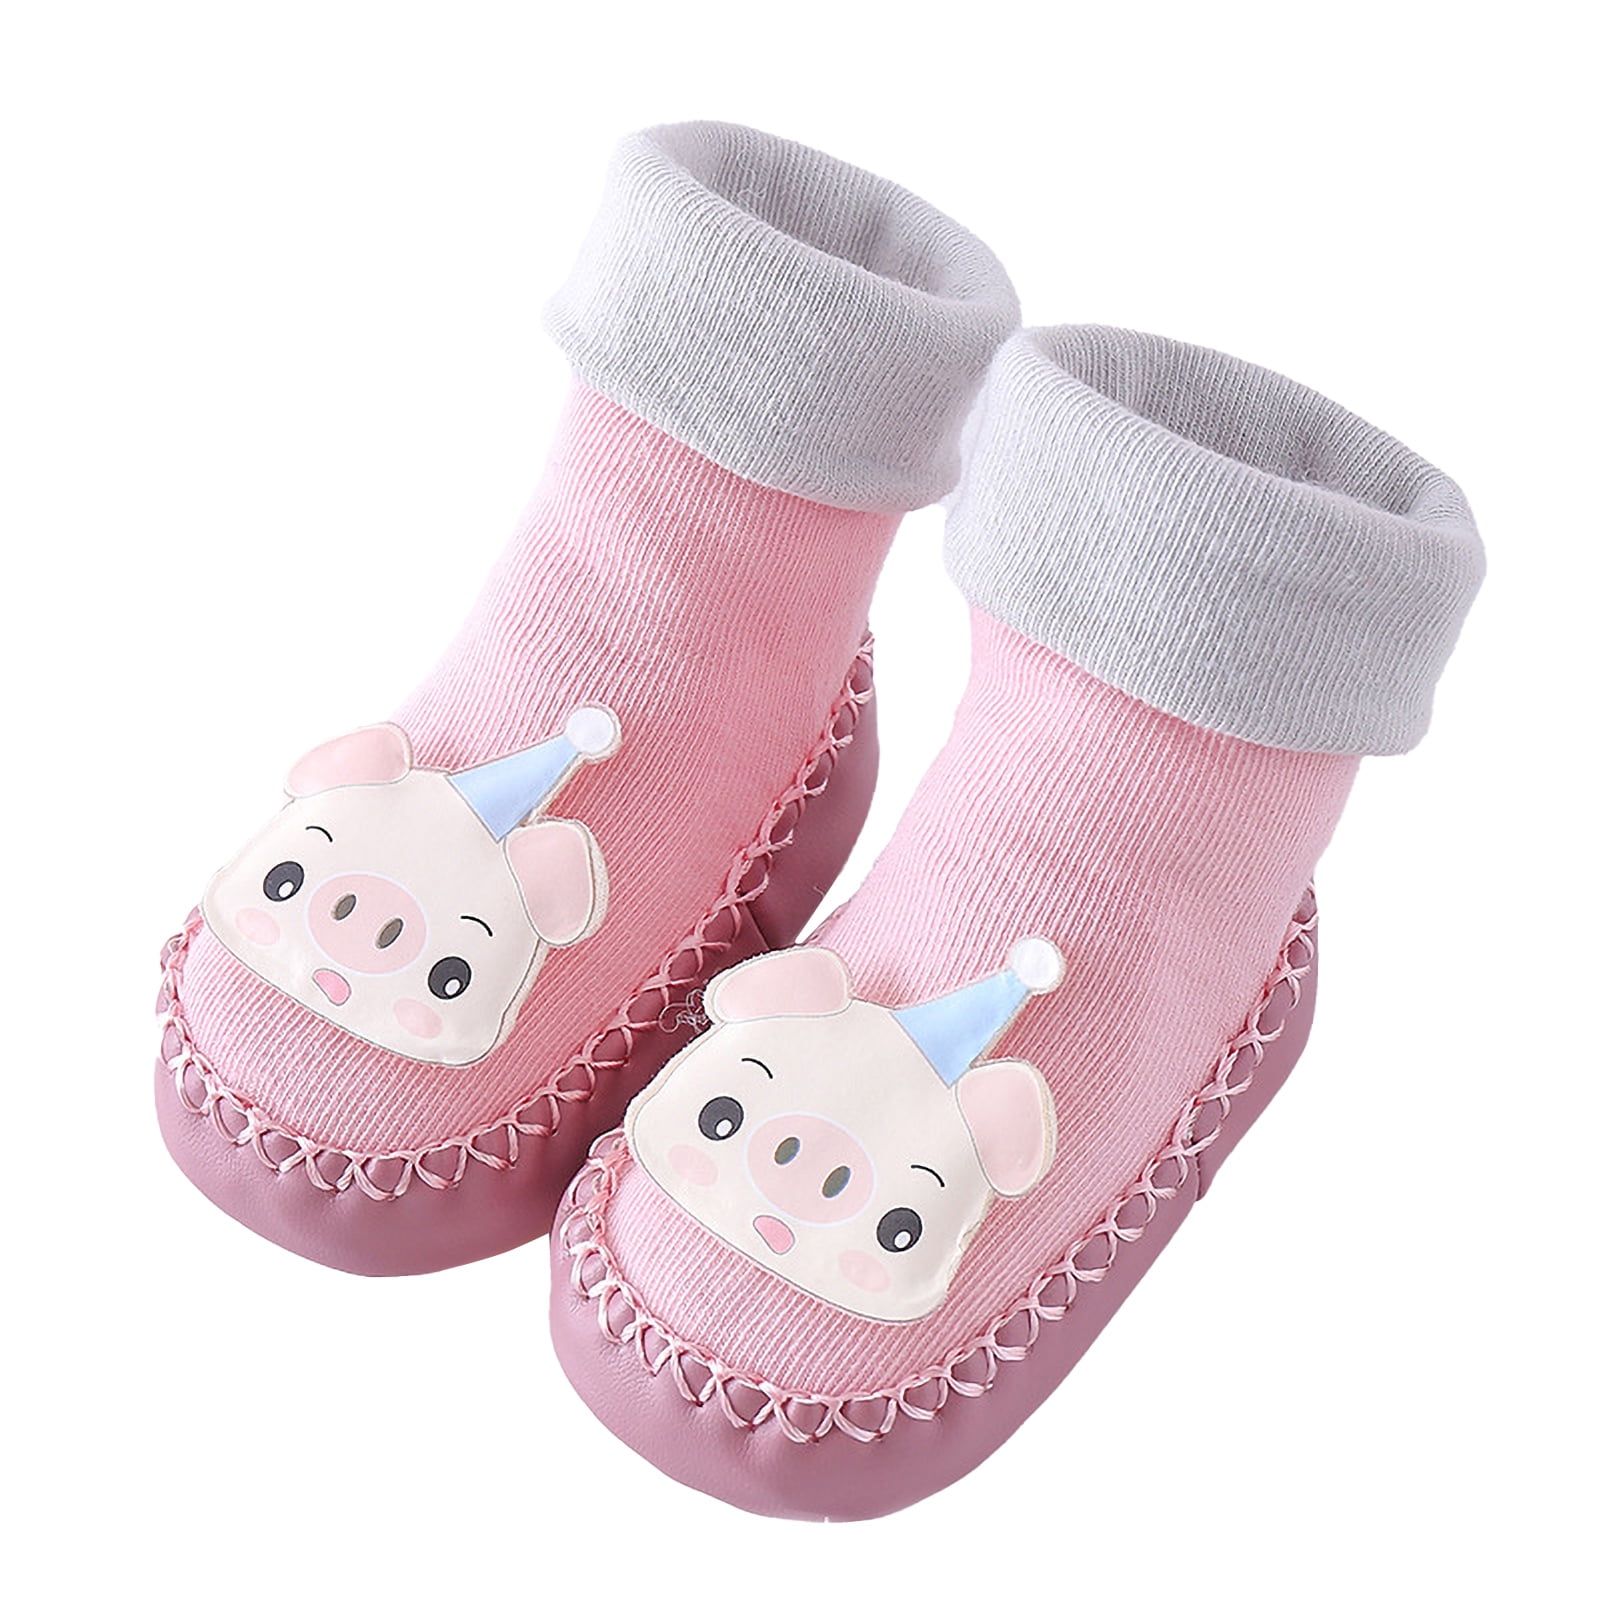 Baby Toddlers Socks Lovely Cartoon Hosiery Infant Toddler Non-skid Socks 1Pair 